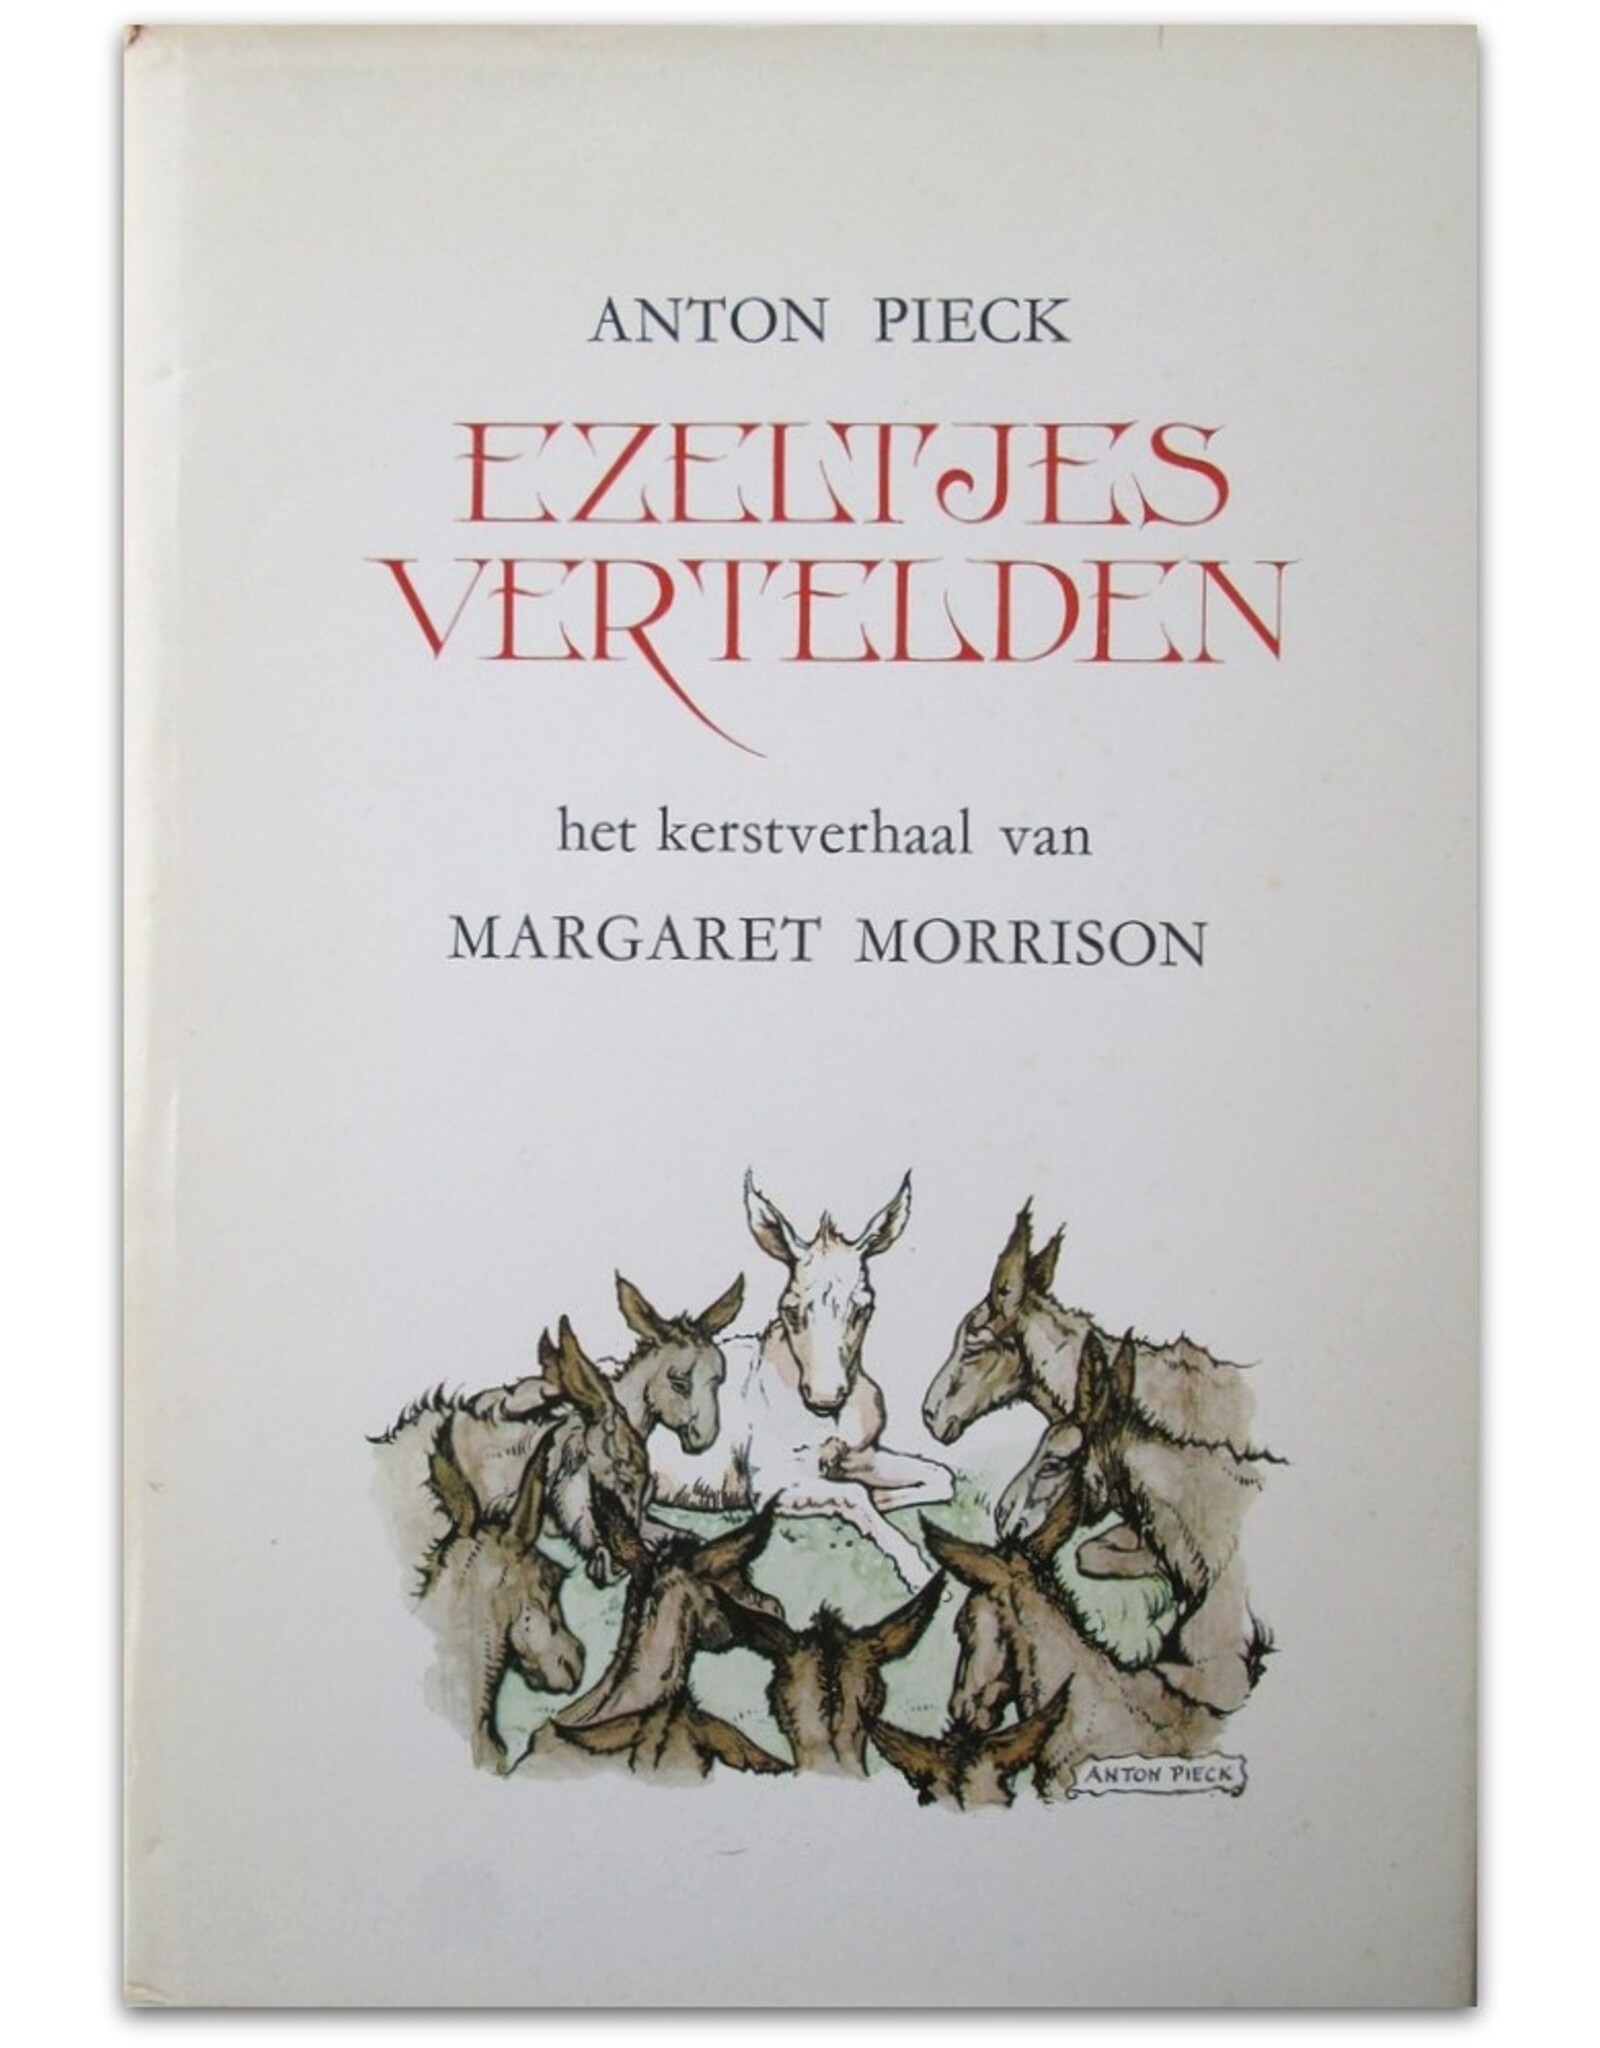 Anton Pieck & Margaret Morrison - Ezeltjes vertelden [Een kerstboek voor grote en kleine mensen]. Vertaling Co Kars